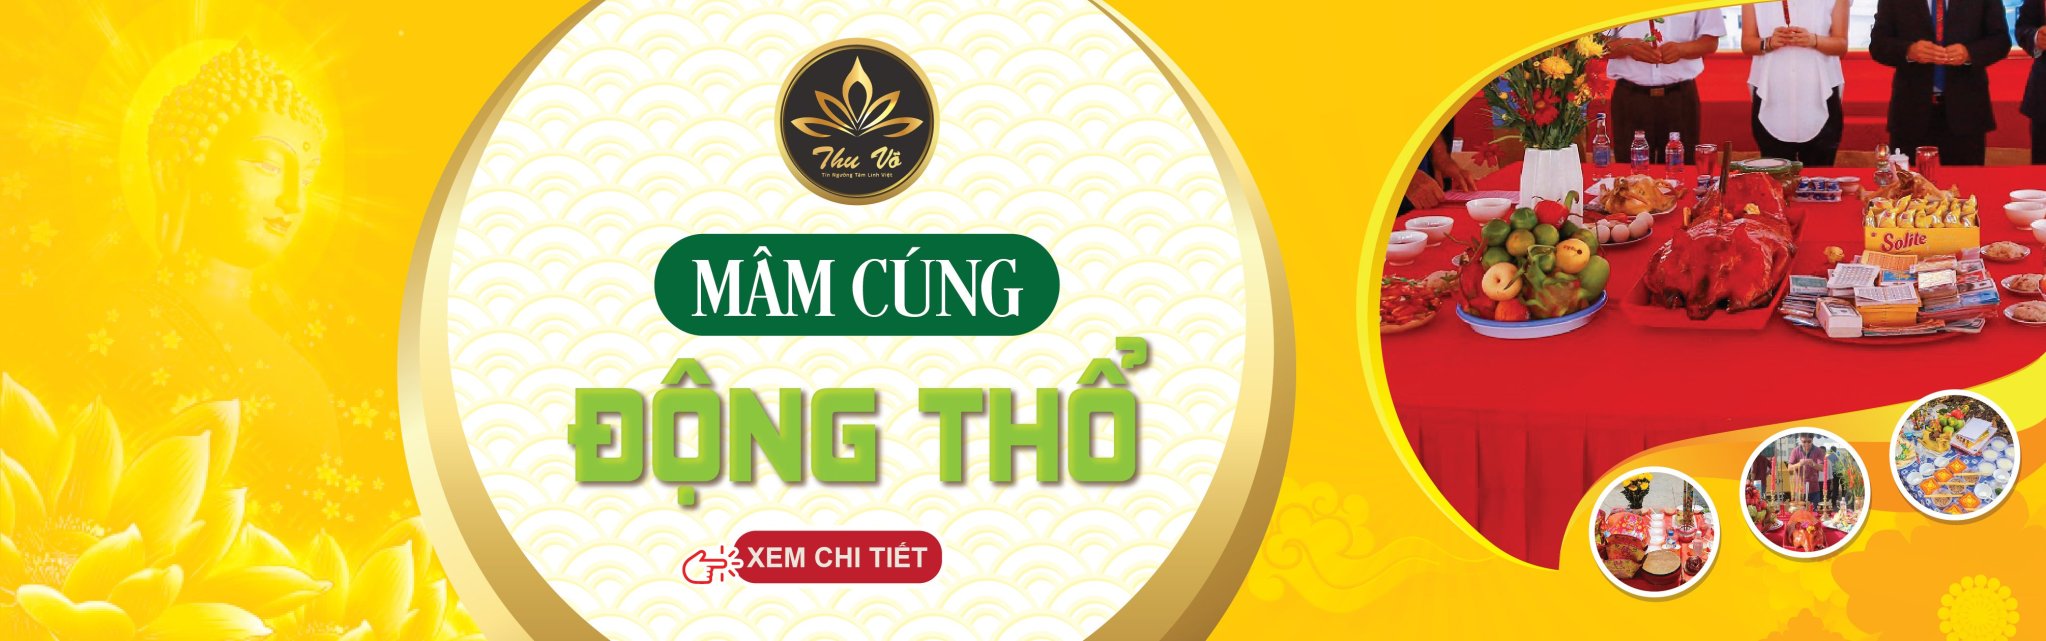 Mam Cung Dong Tho Banner